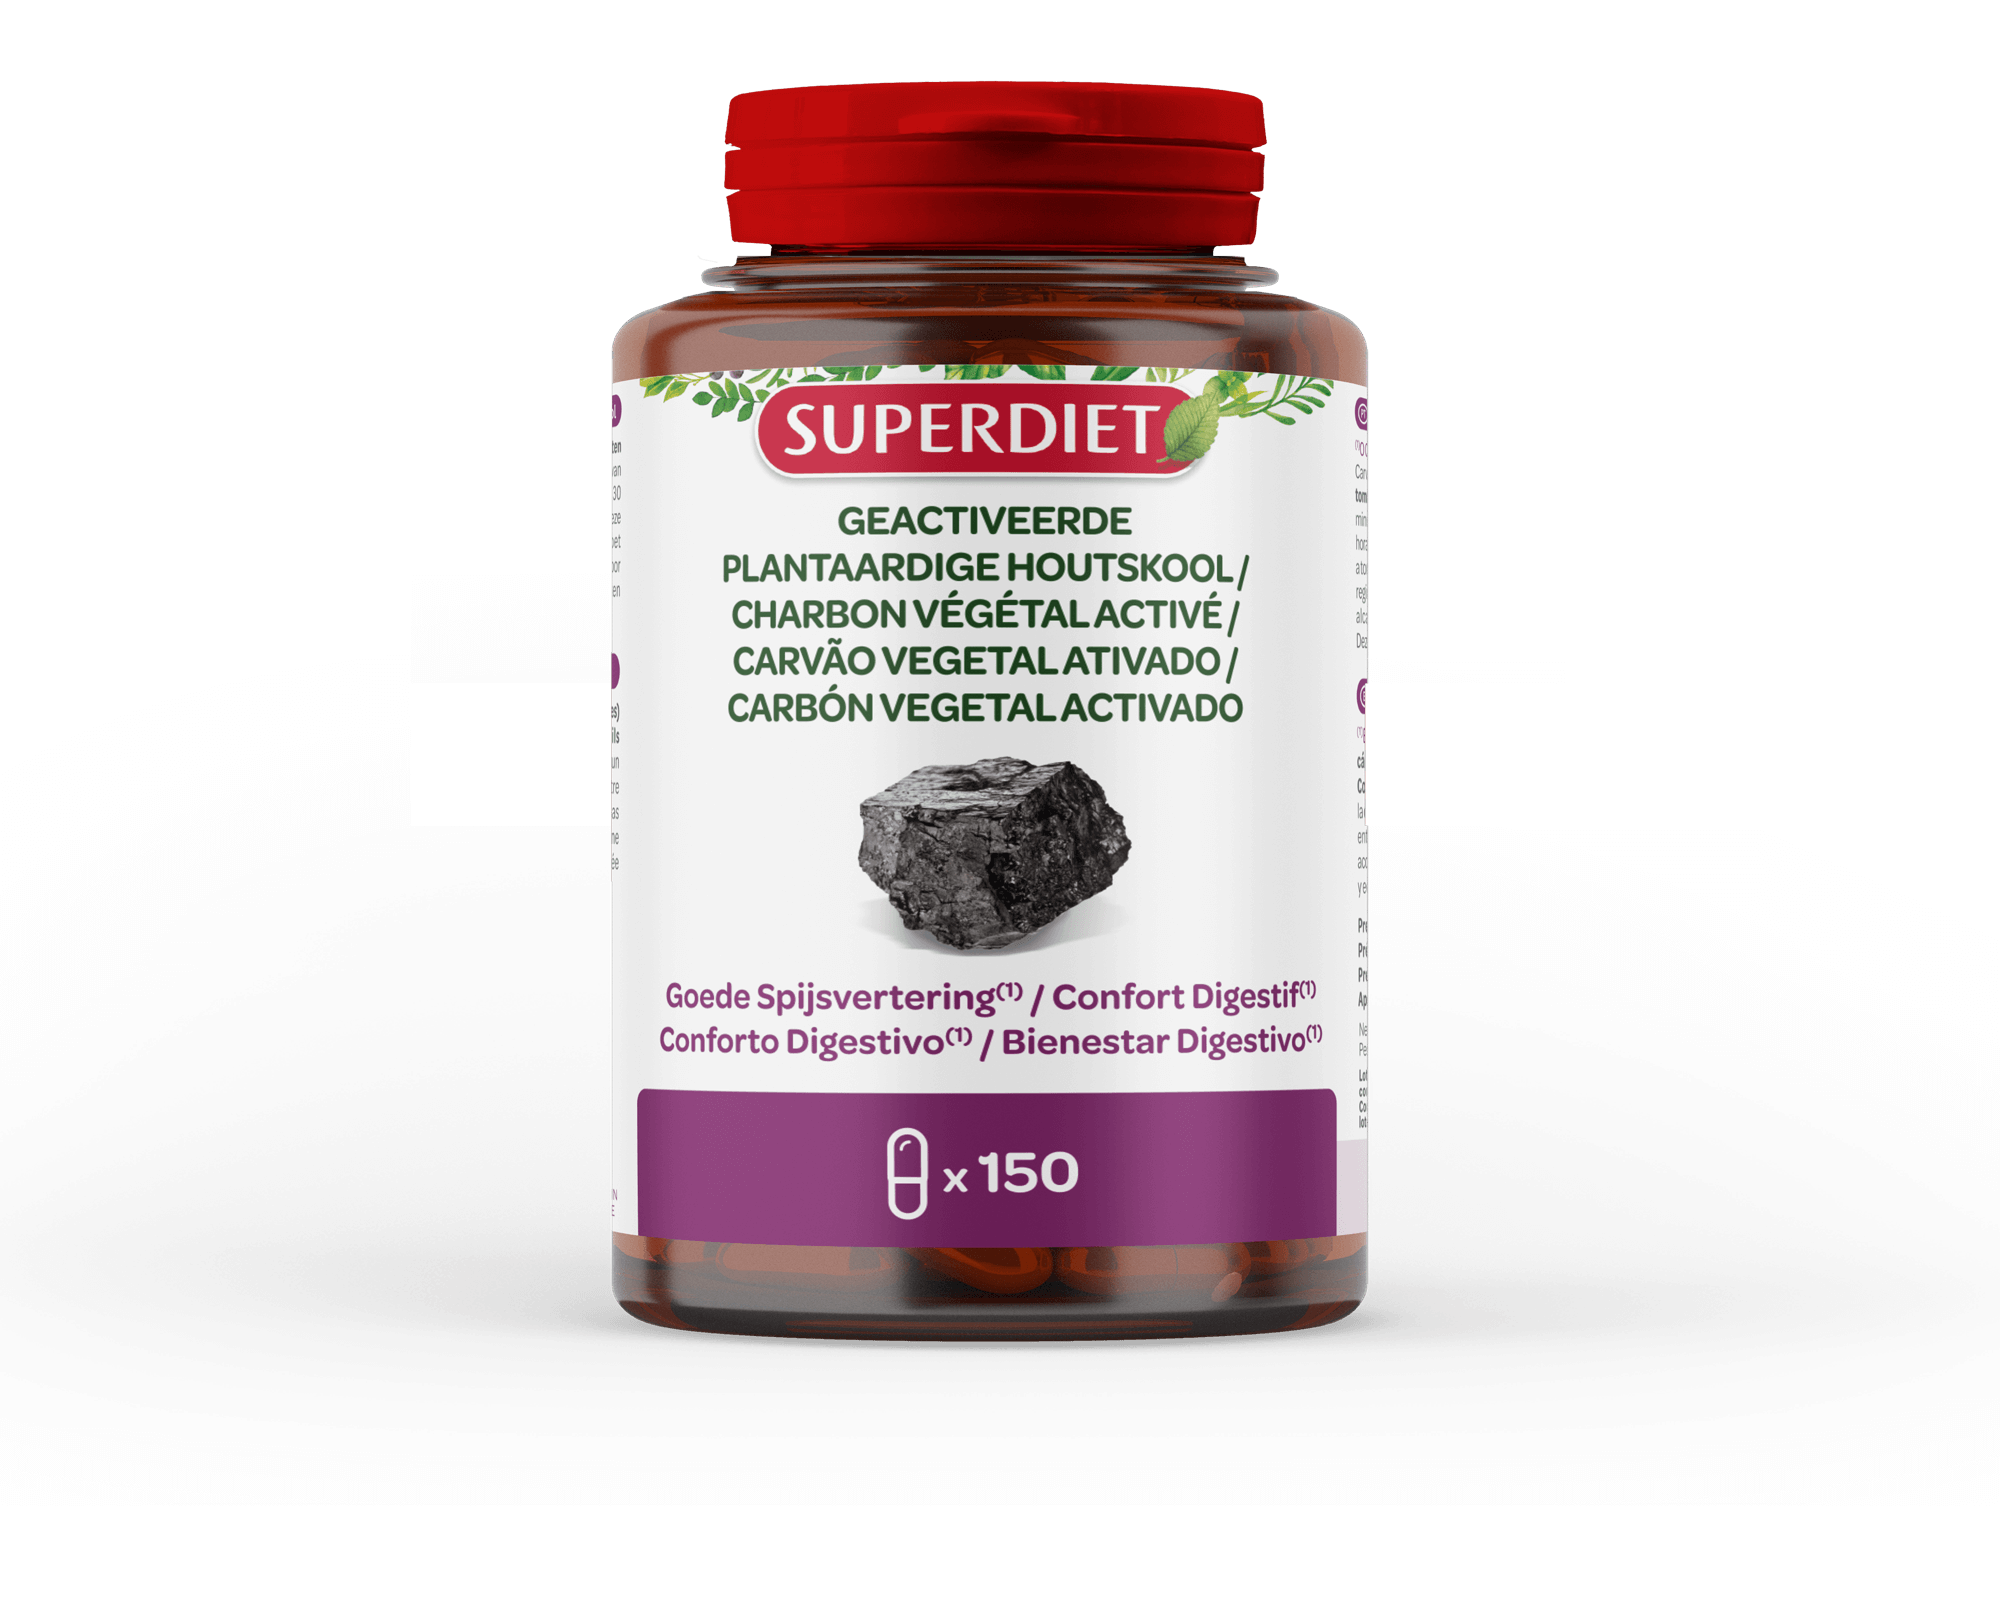 Super Diet Plantaardige houtskool 150capsules  PL 483/215